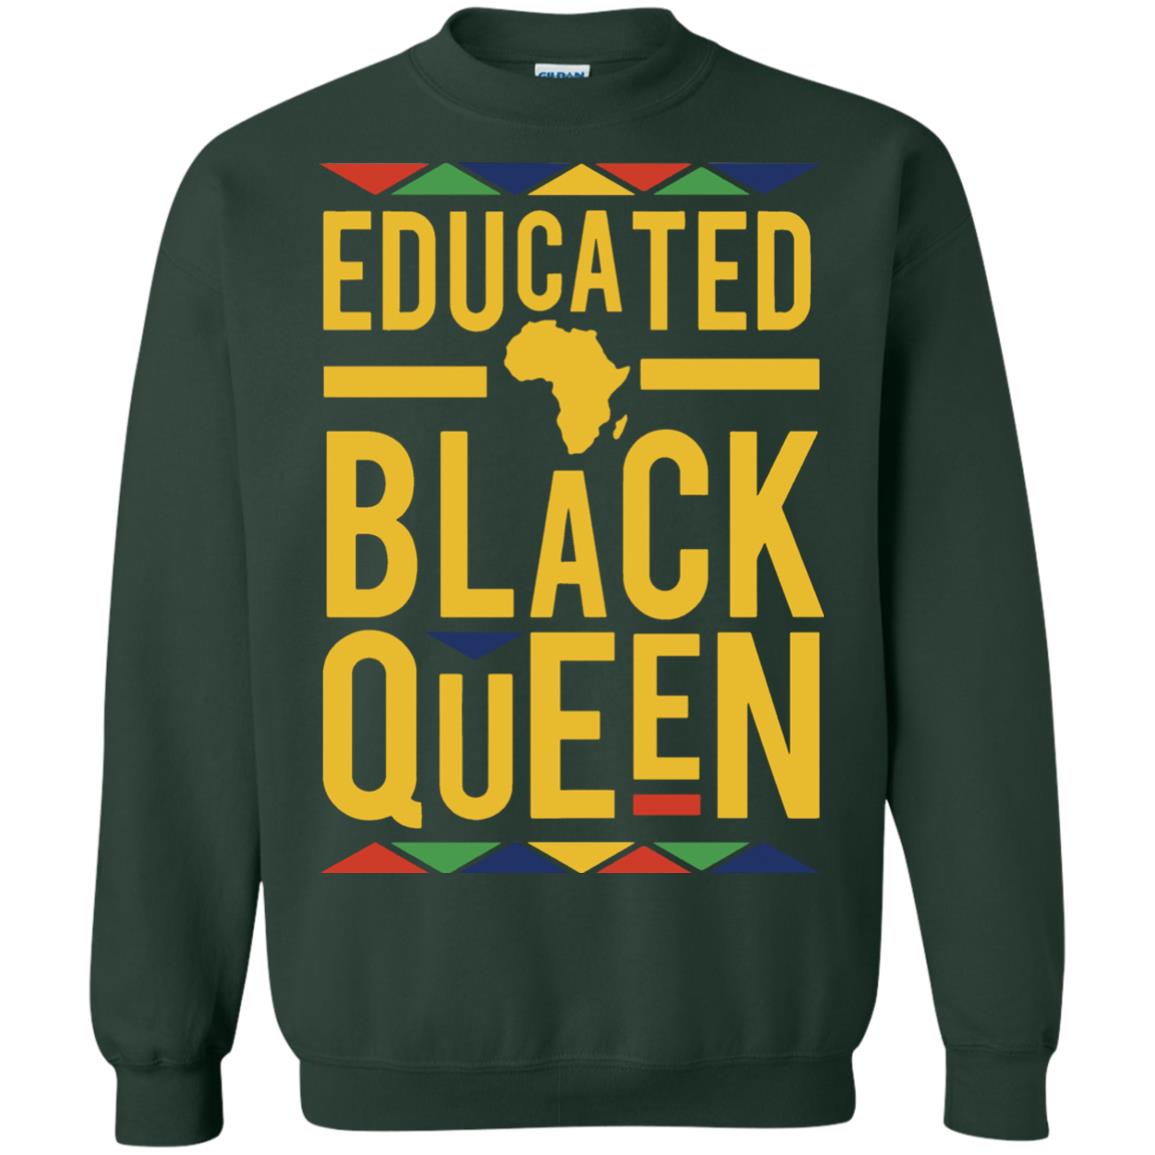 educated black queen sweatshirt - forest green